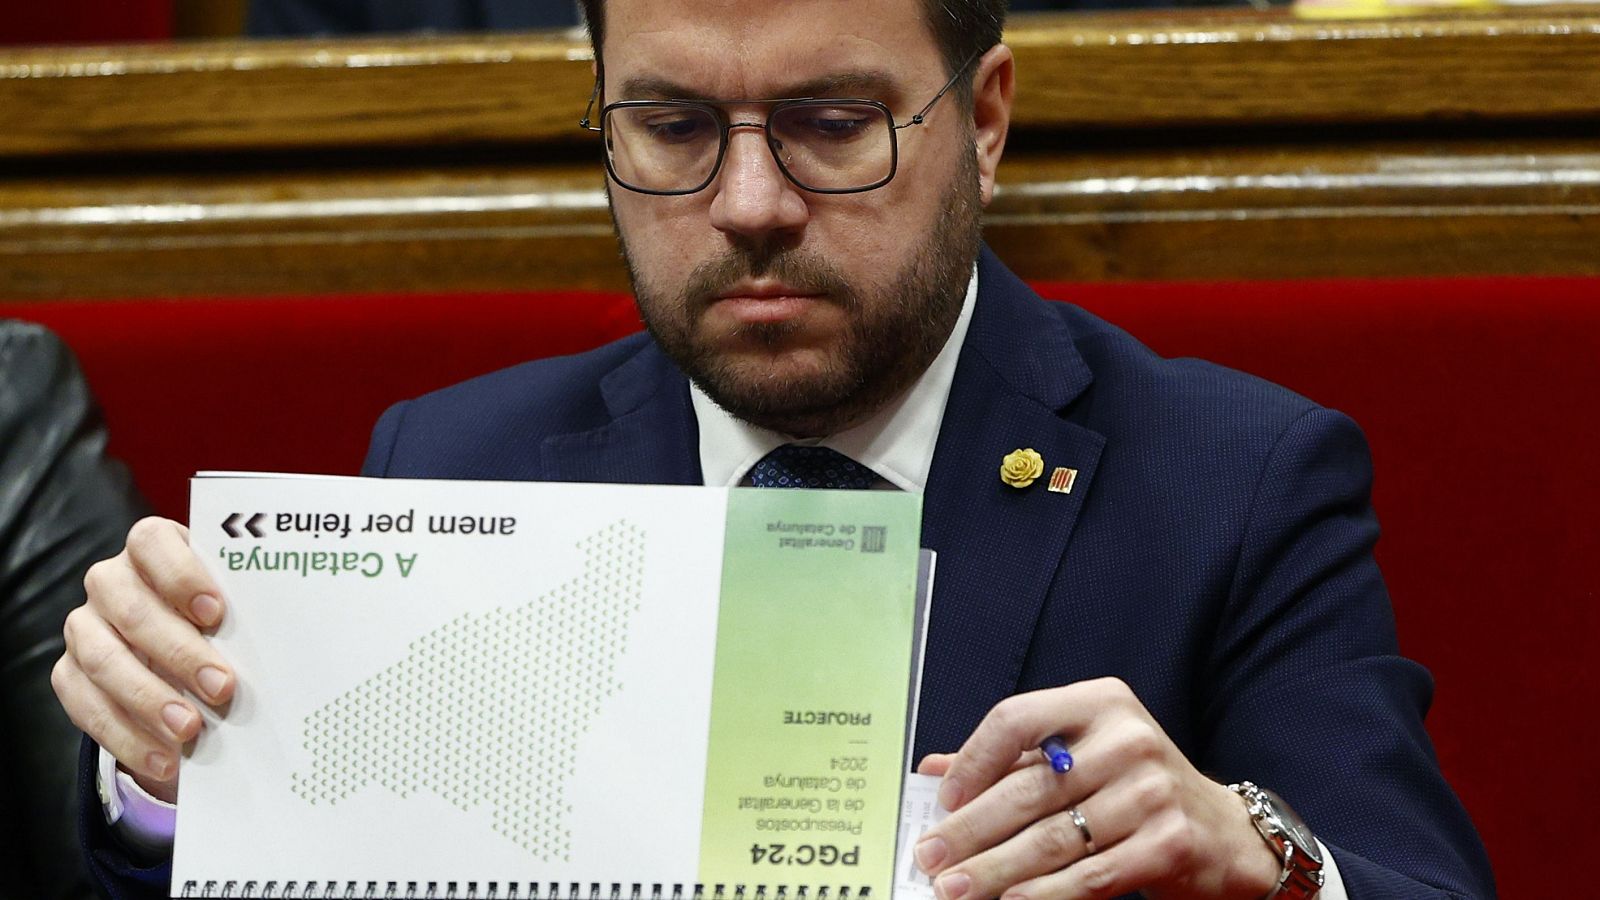 Los partidos catalanes valoran el adelanto electoral